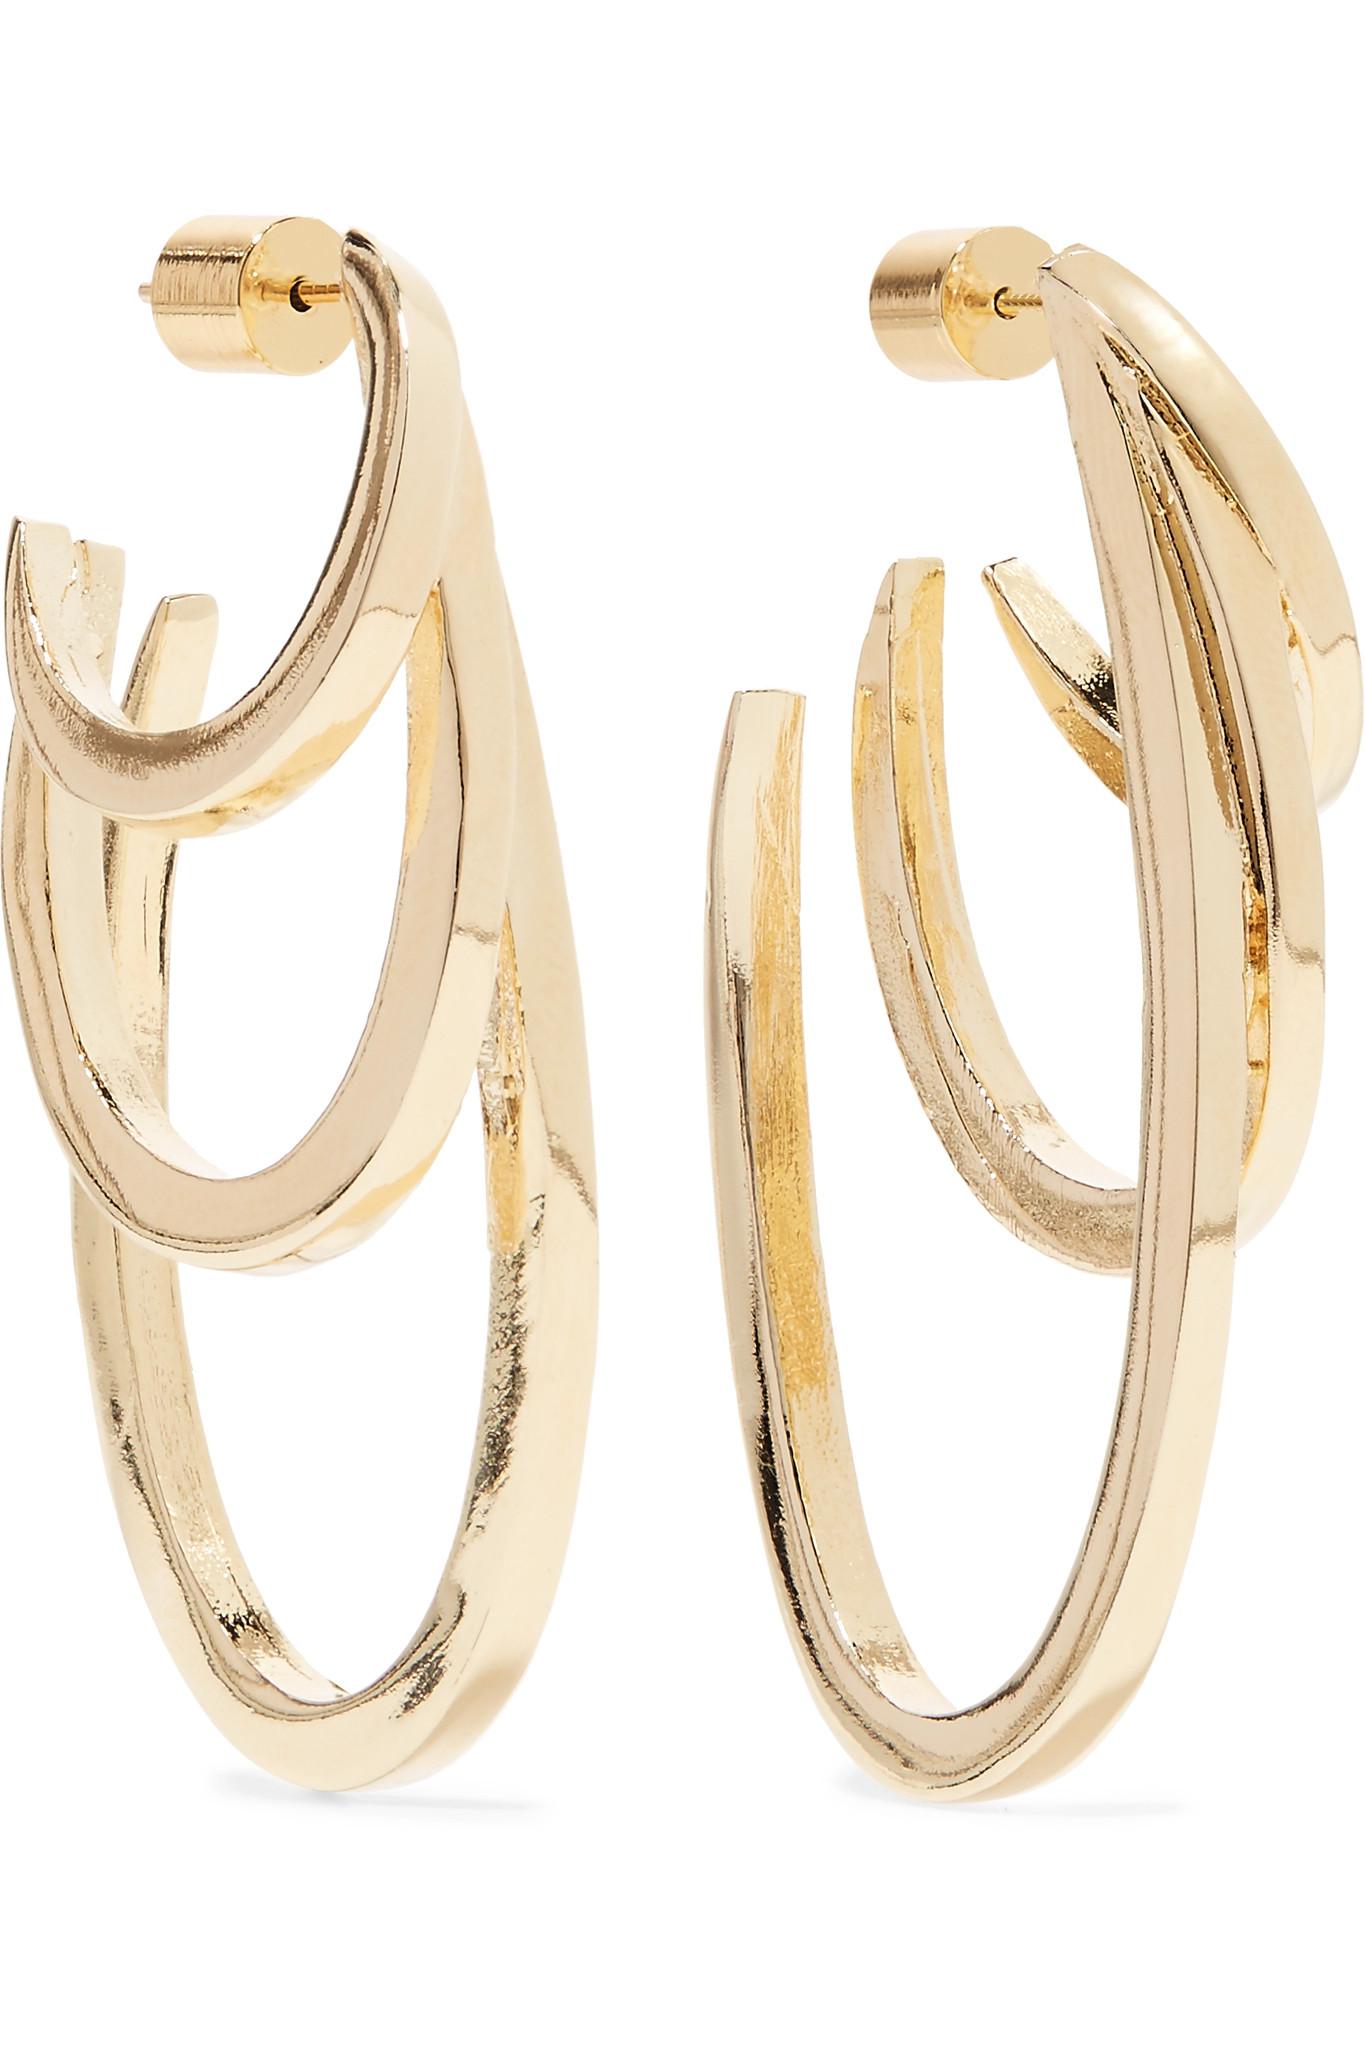 Lyst - Jennifer Fisher Square Adwoa Gold-plated Hoop Earrings in Metallic